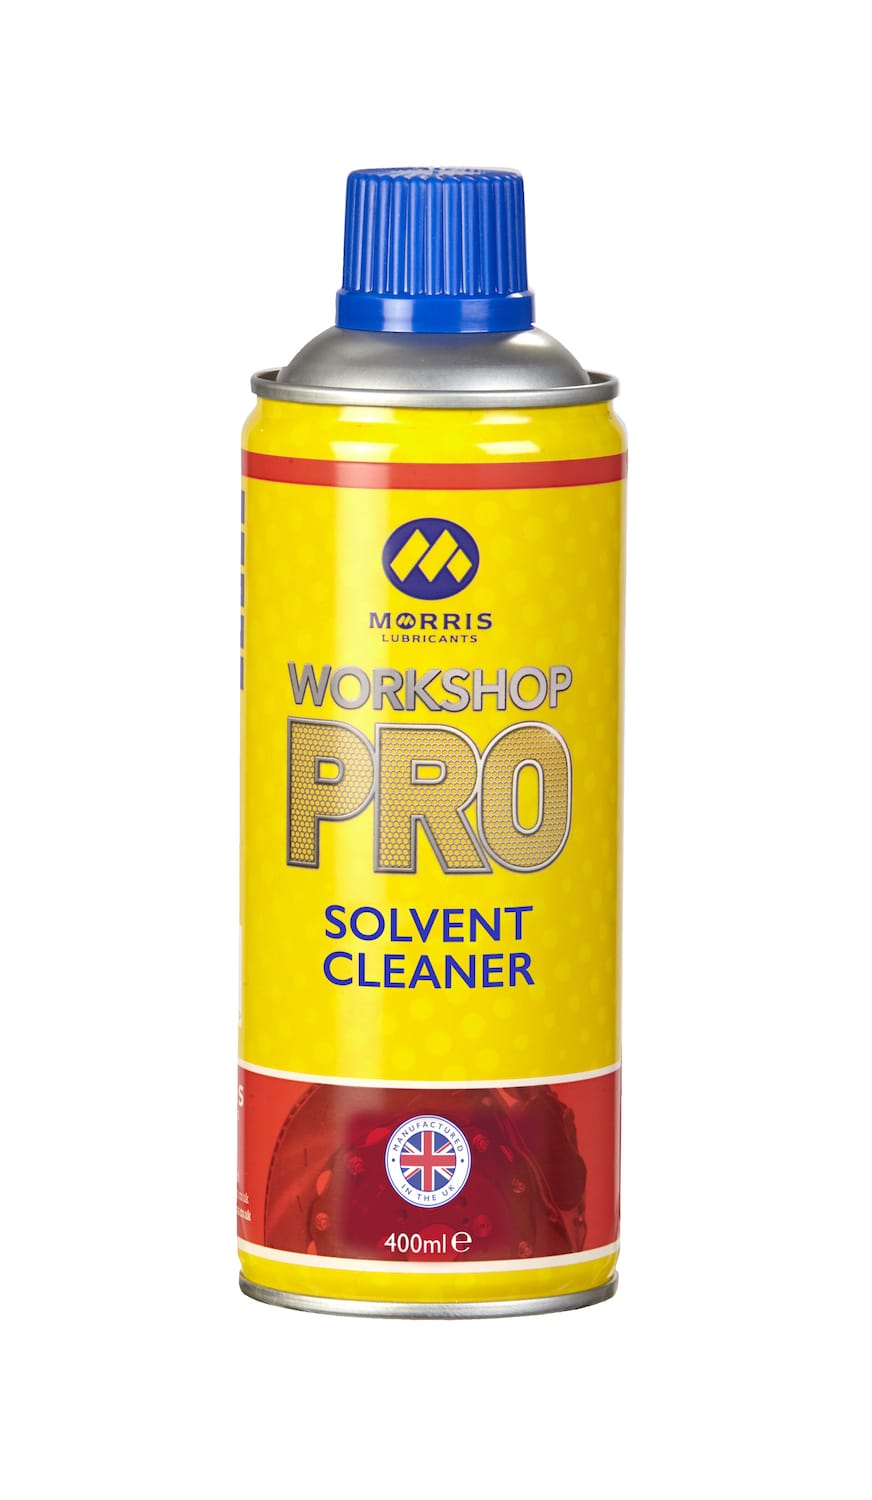 Workshop Pro Solvent Cleaner